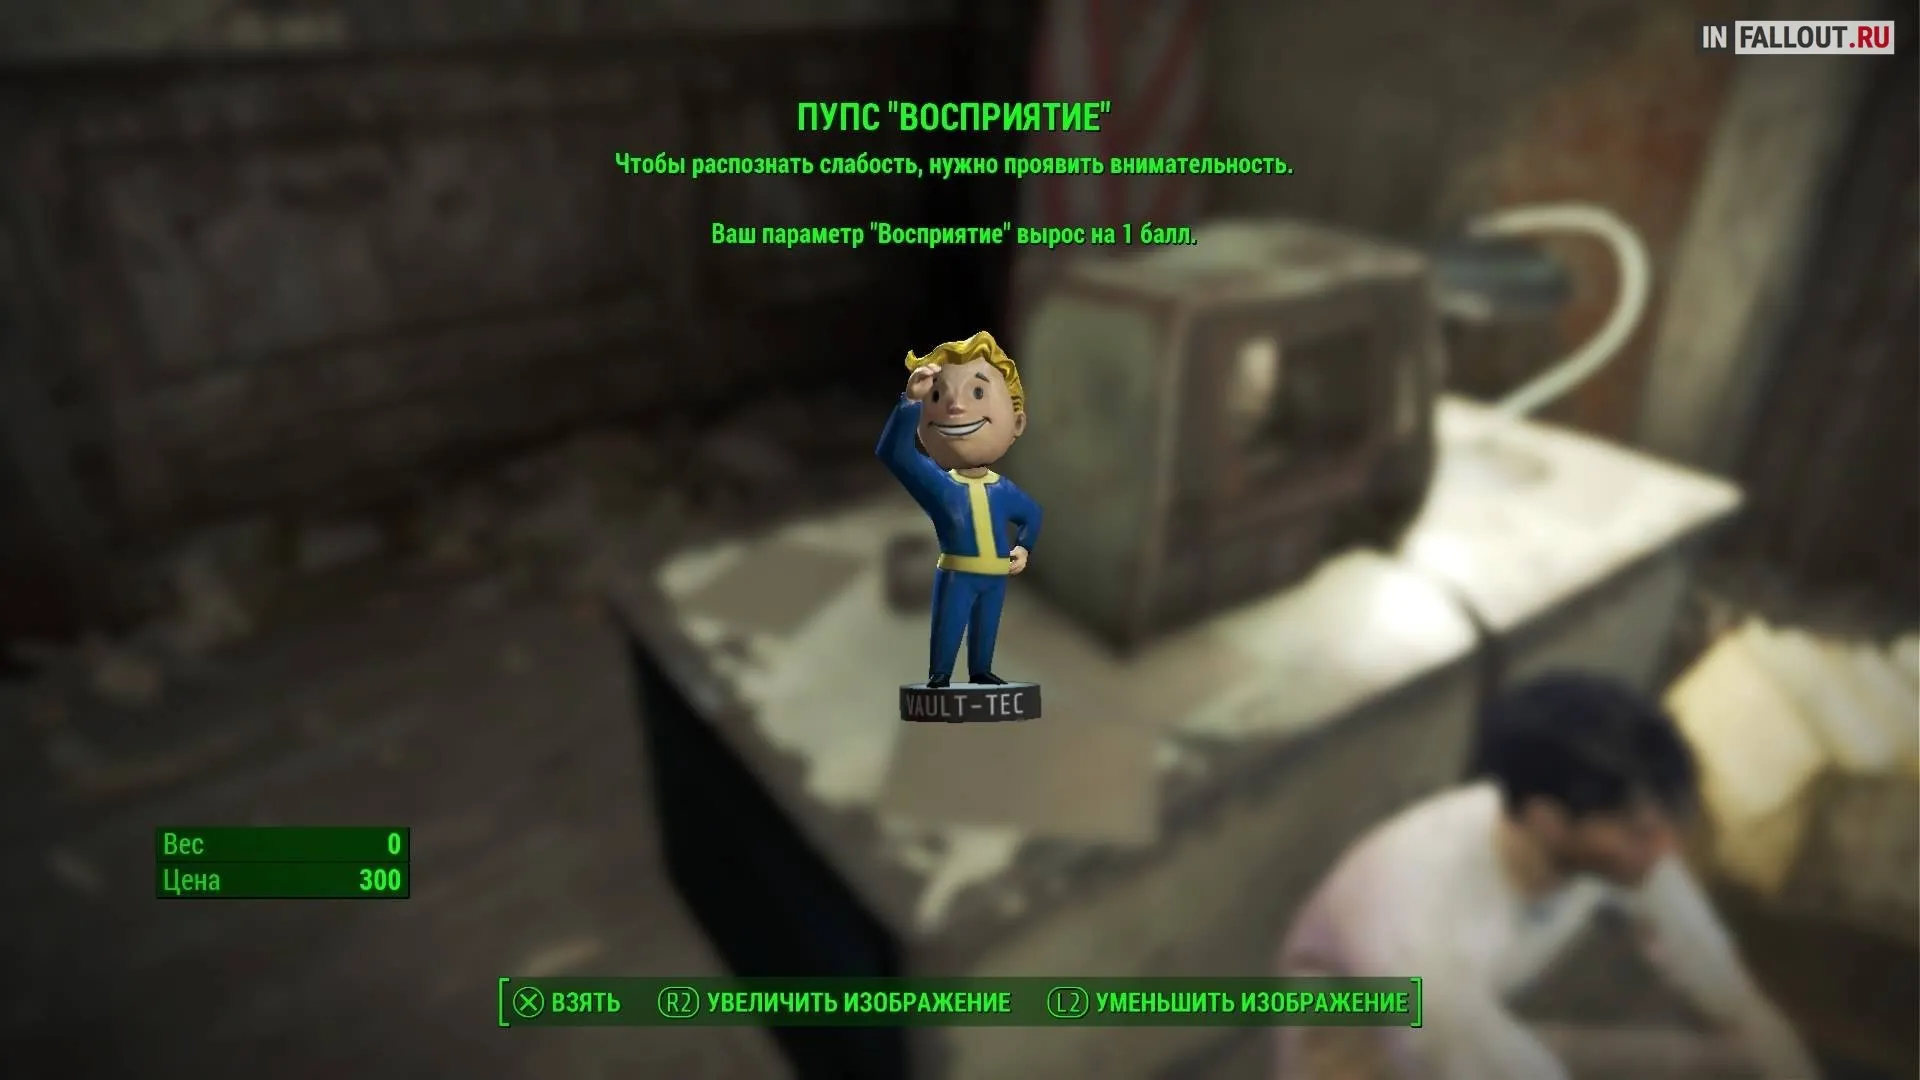 Пупс где найти. Пупс удача Fallout 4 местонахождение. Пупс красноречие фоллаут 3. Пупс ловкость Fallout 4 местонахождение. Фоллаут 4 Тринити Тауэр пупс.